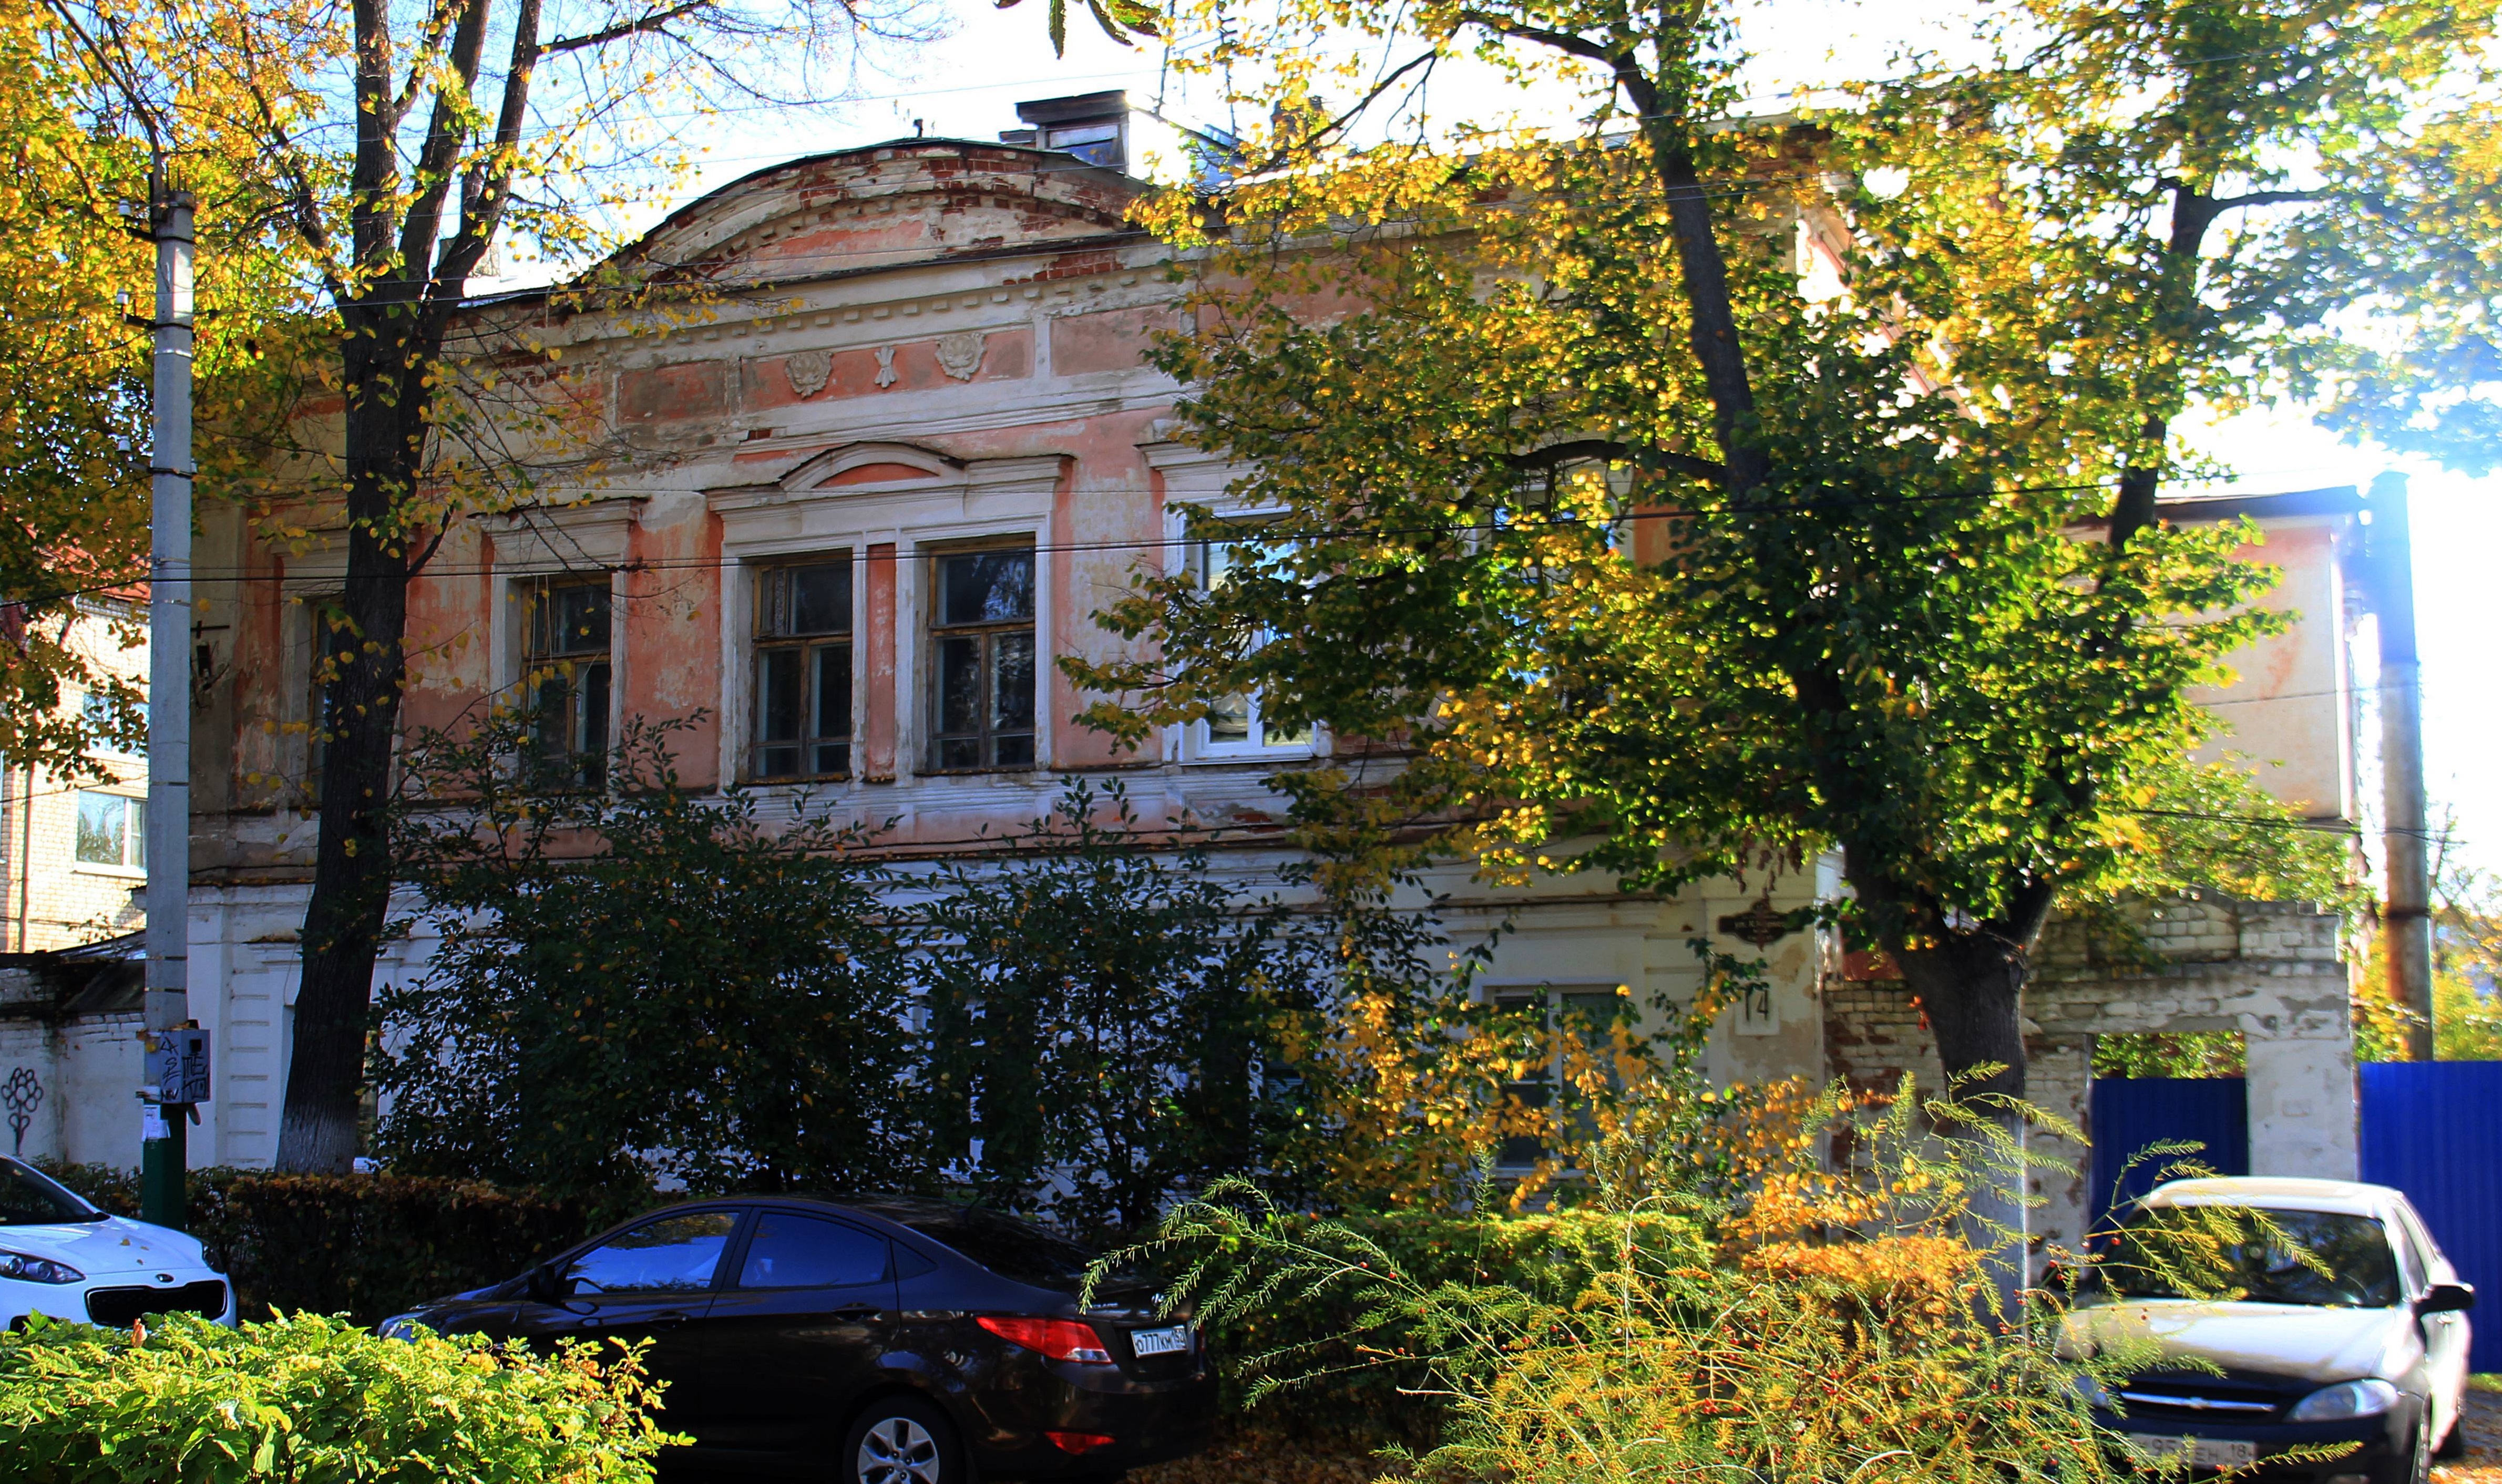 Объект культурного наследия – дом купца Токарева отремонтируют в Арзамасе в 2022 году - фото 1